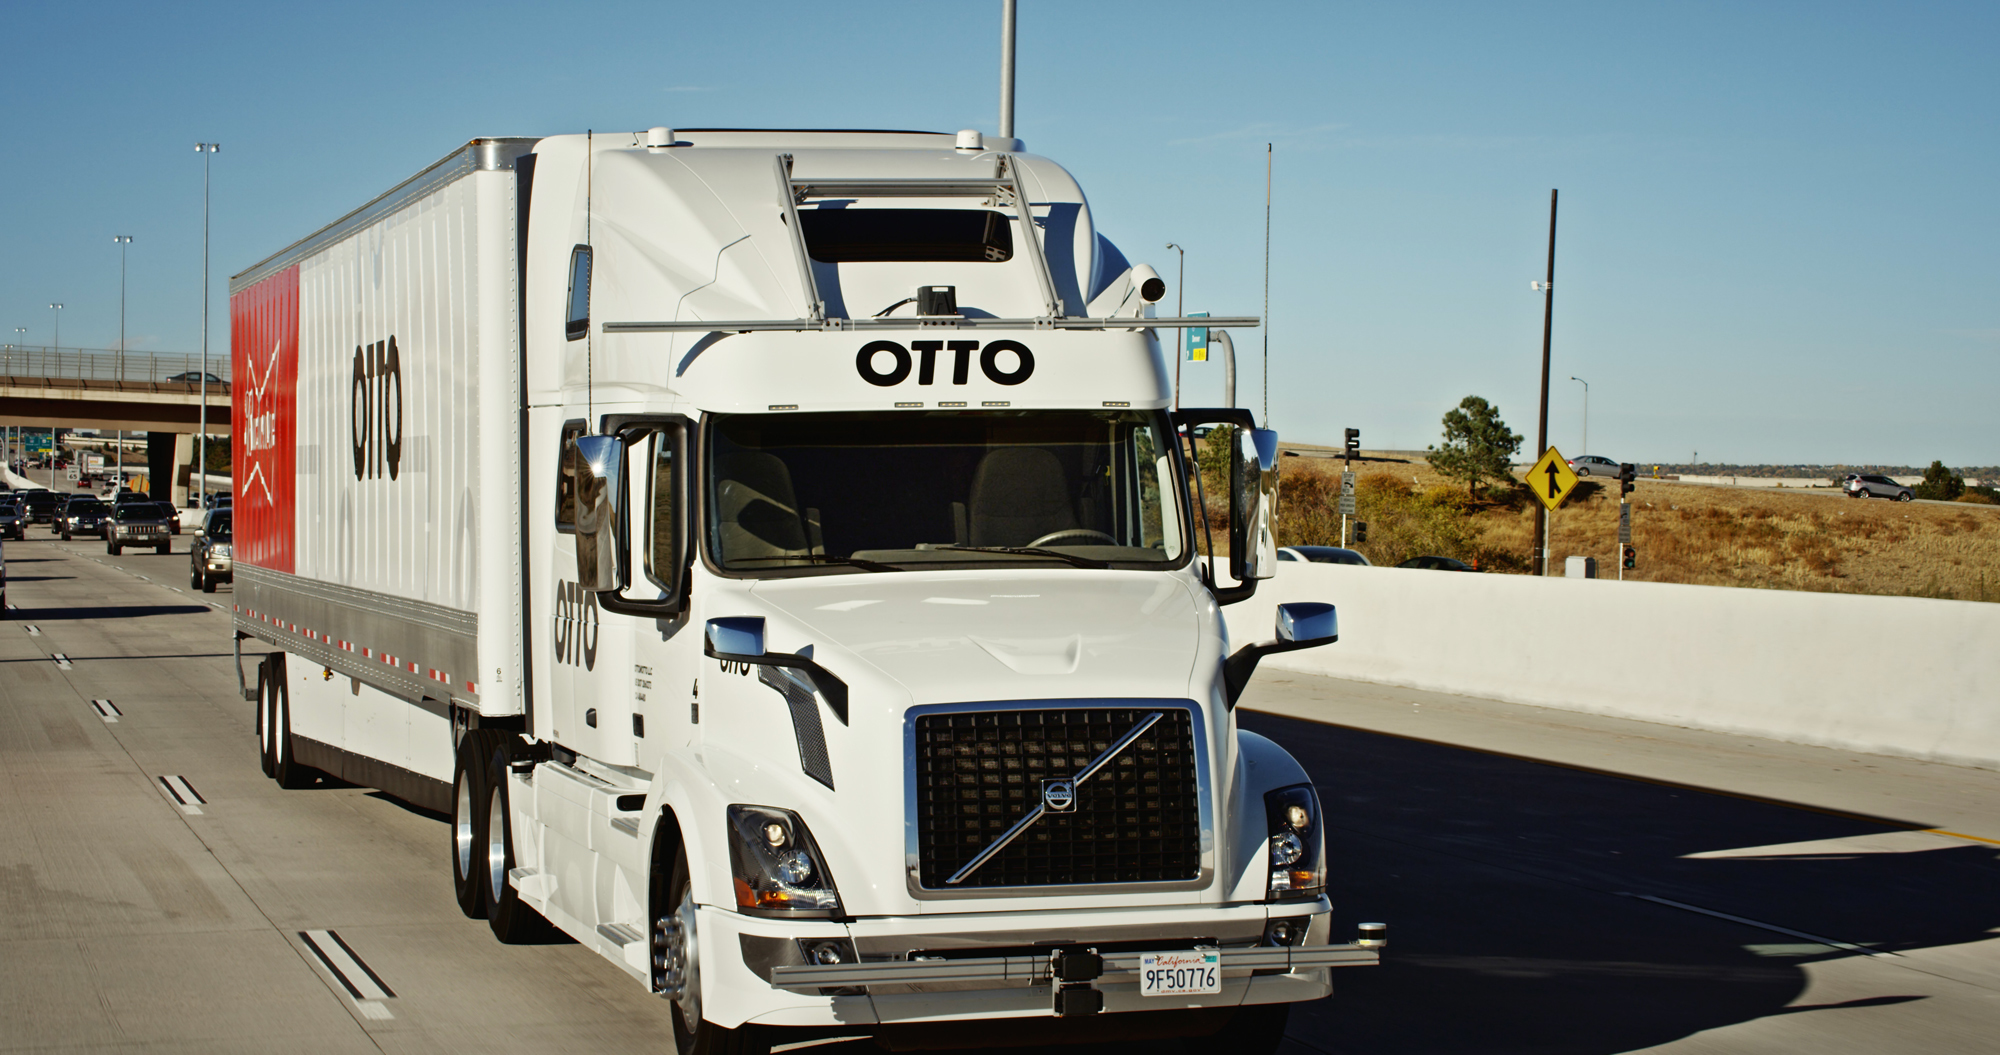 KK79 - Na snímke z októbra 2016 kamión firmy Otto, ktorý jazdí bez oféra, preváa pivo v Colorade. Kamión naloený pivom a s prázdnym sedadlom oféra preiel tento týdeò 192 kilometrov po dia¾nici v americkom táte Colorado. Ilo o prvú takúto jazdu vôbec  prvú komerènú dodávku tovaru kamiónom bez oféra. Jazdu uskutoènila firma Otto, ktorá sa zaoberá vývojom kamiónov bez oféra. Do projektu sa zapojil aj pivovar Anheuser-Busch. Kamión zaèal svoju jazdu práve v pivovare a naloený bol 51.744 plechovkami piva. Kamión najprv potreboval ¾udskú pomoc na kriovatkách. ofér vyviedol kamión z fabriky na dia¾nicu, potom zapol autooféra, presadol si na zadné sedadlo a èítal si noviny. FOTO TASR/AP This October 2016 photo provided by Anheuser-Busch shows a self-driving truck that delivers beer, in Colorado. Anheuser-Busch said it completed the world's first commercial shipment by self-driving truck, sending a beer-filled tractor-trailer on a journey of more than 120 miles through Colorado. (Kyle Bullington/Otto/Anheuser-Busch via AP)